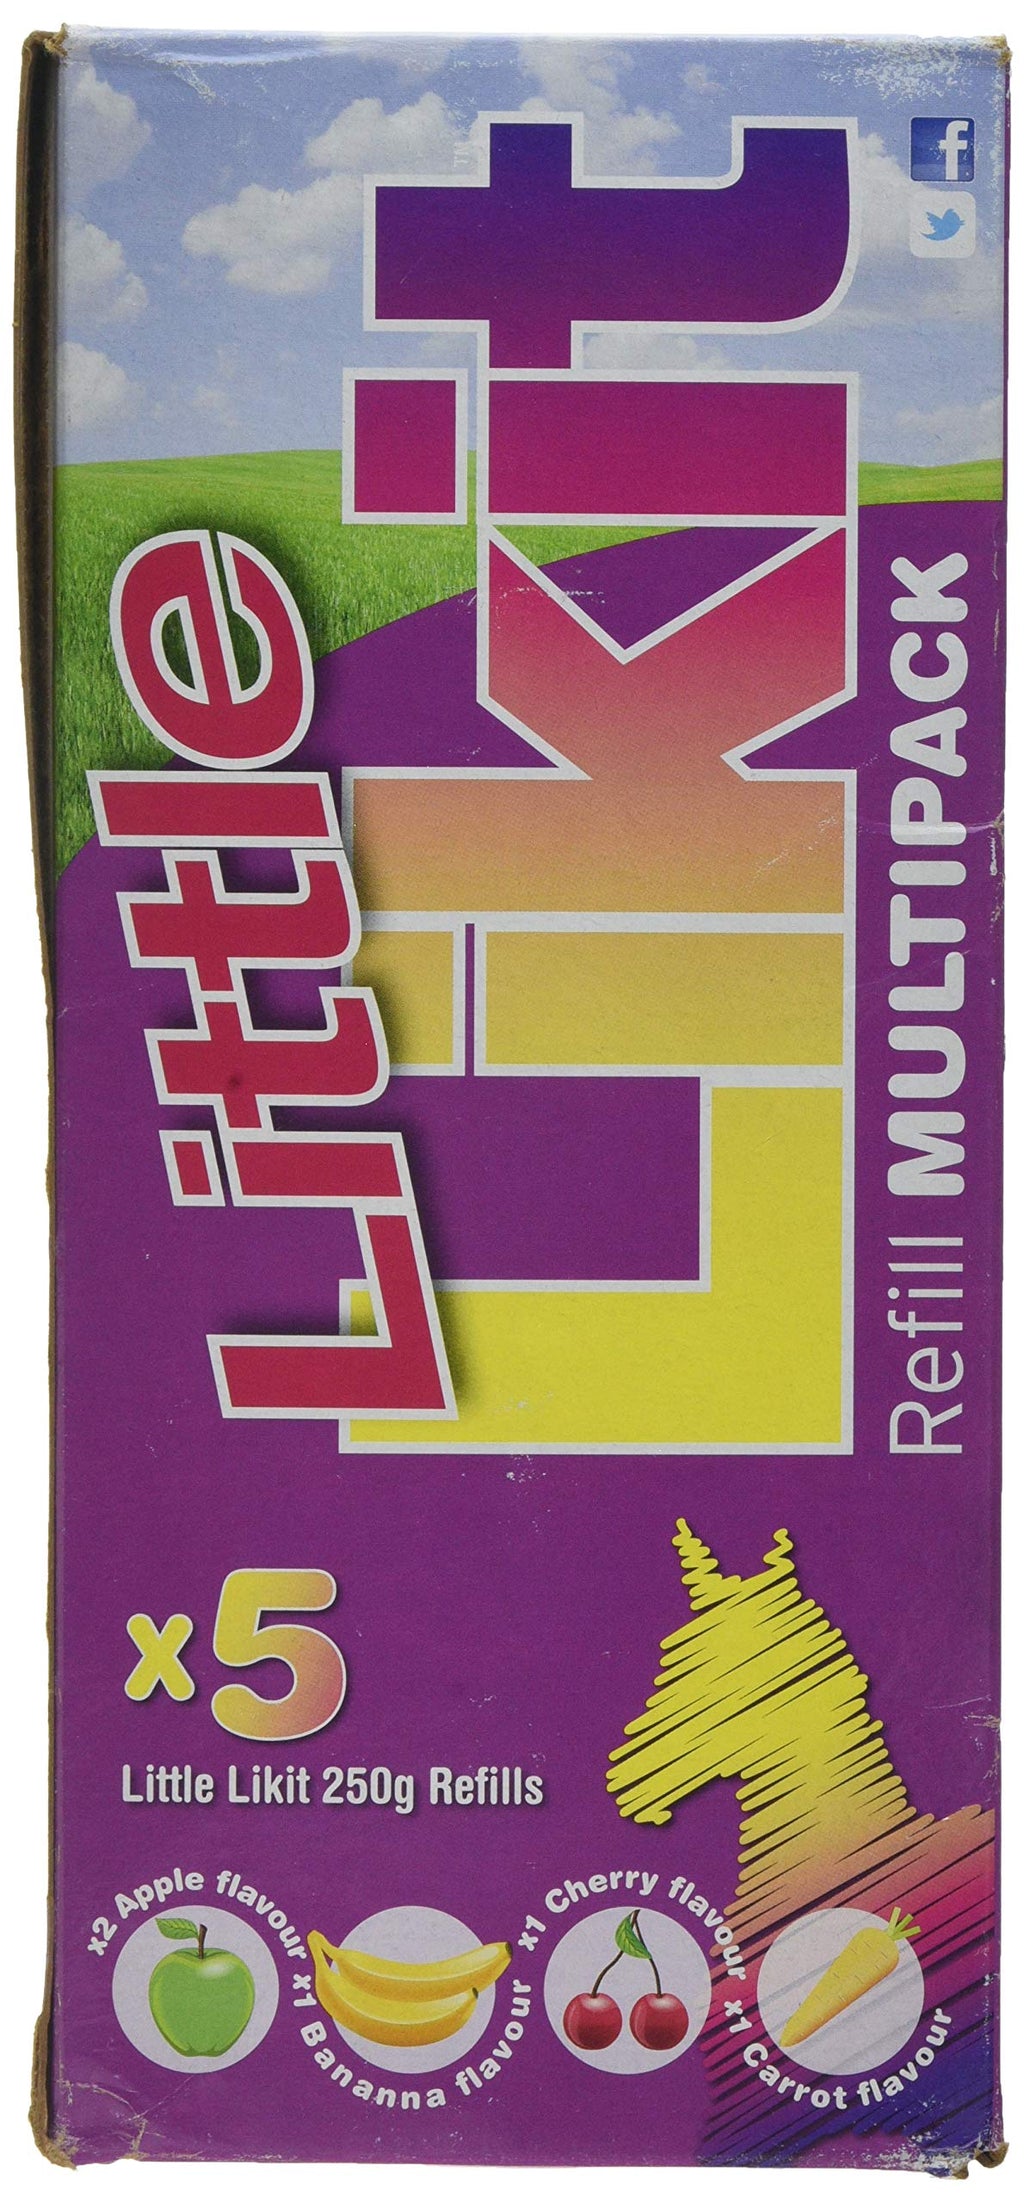 Likit Little Multipack Refill, Apple/cherry/banana/carrot, Pack Of 5 - PawsPlanet Australia